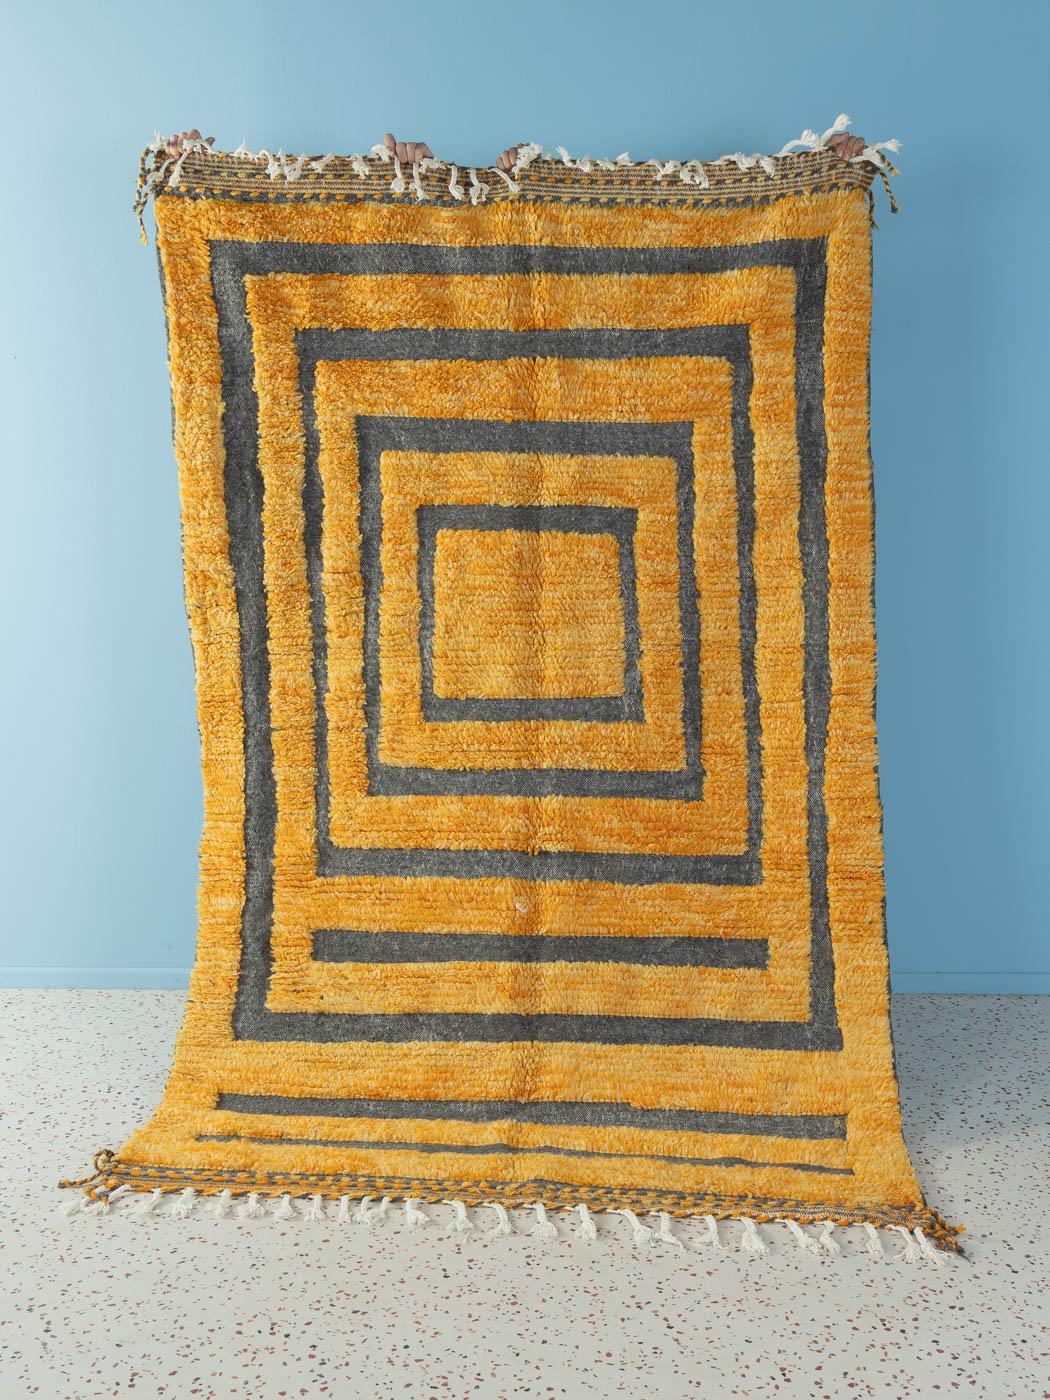 Candide ist ein moderner Teppich aus 100 % Wolle - dick und weich, angenehm unter den Füßen. Unsere Berberteppiche werden von Amazigh-Frauen im Atlasgebirge handgewebt und handgeknüpft. Diese Gemeinschaften stellen schon seit Tausenden von Jahren